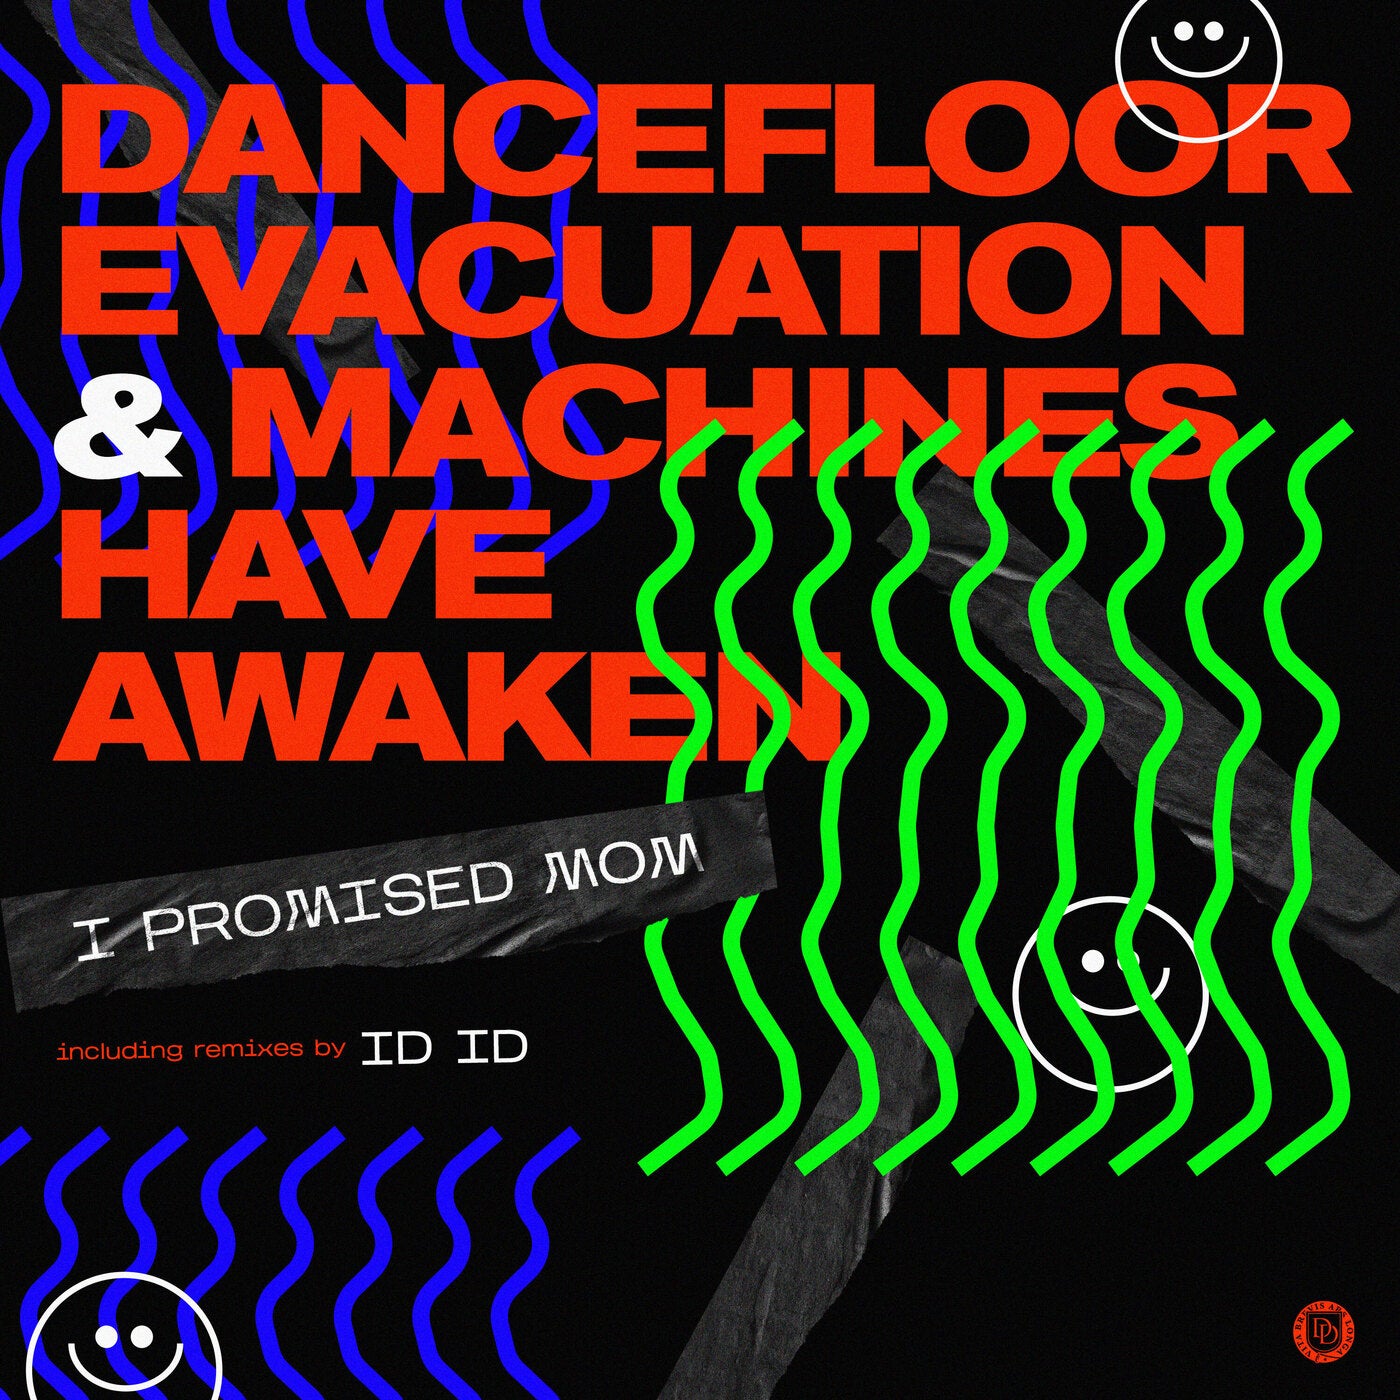 Dancefloor Evacuation & Machines Have Awaken